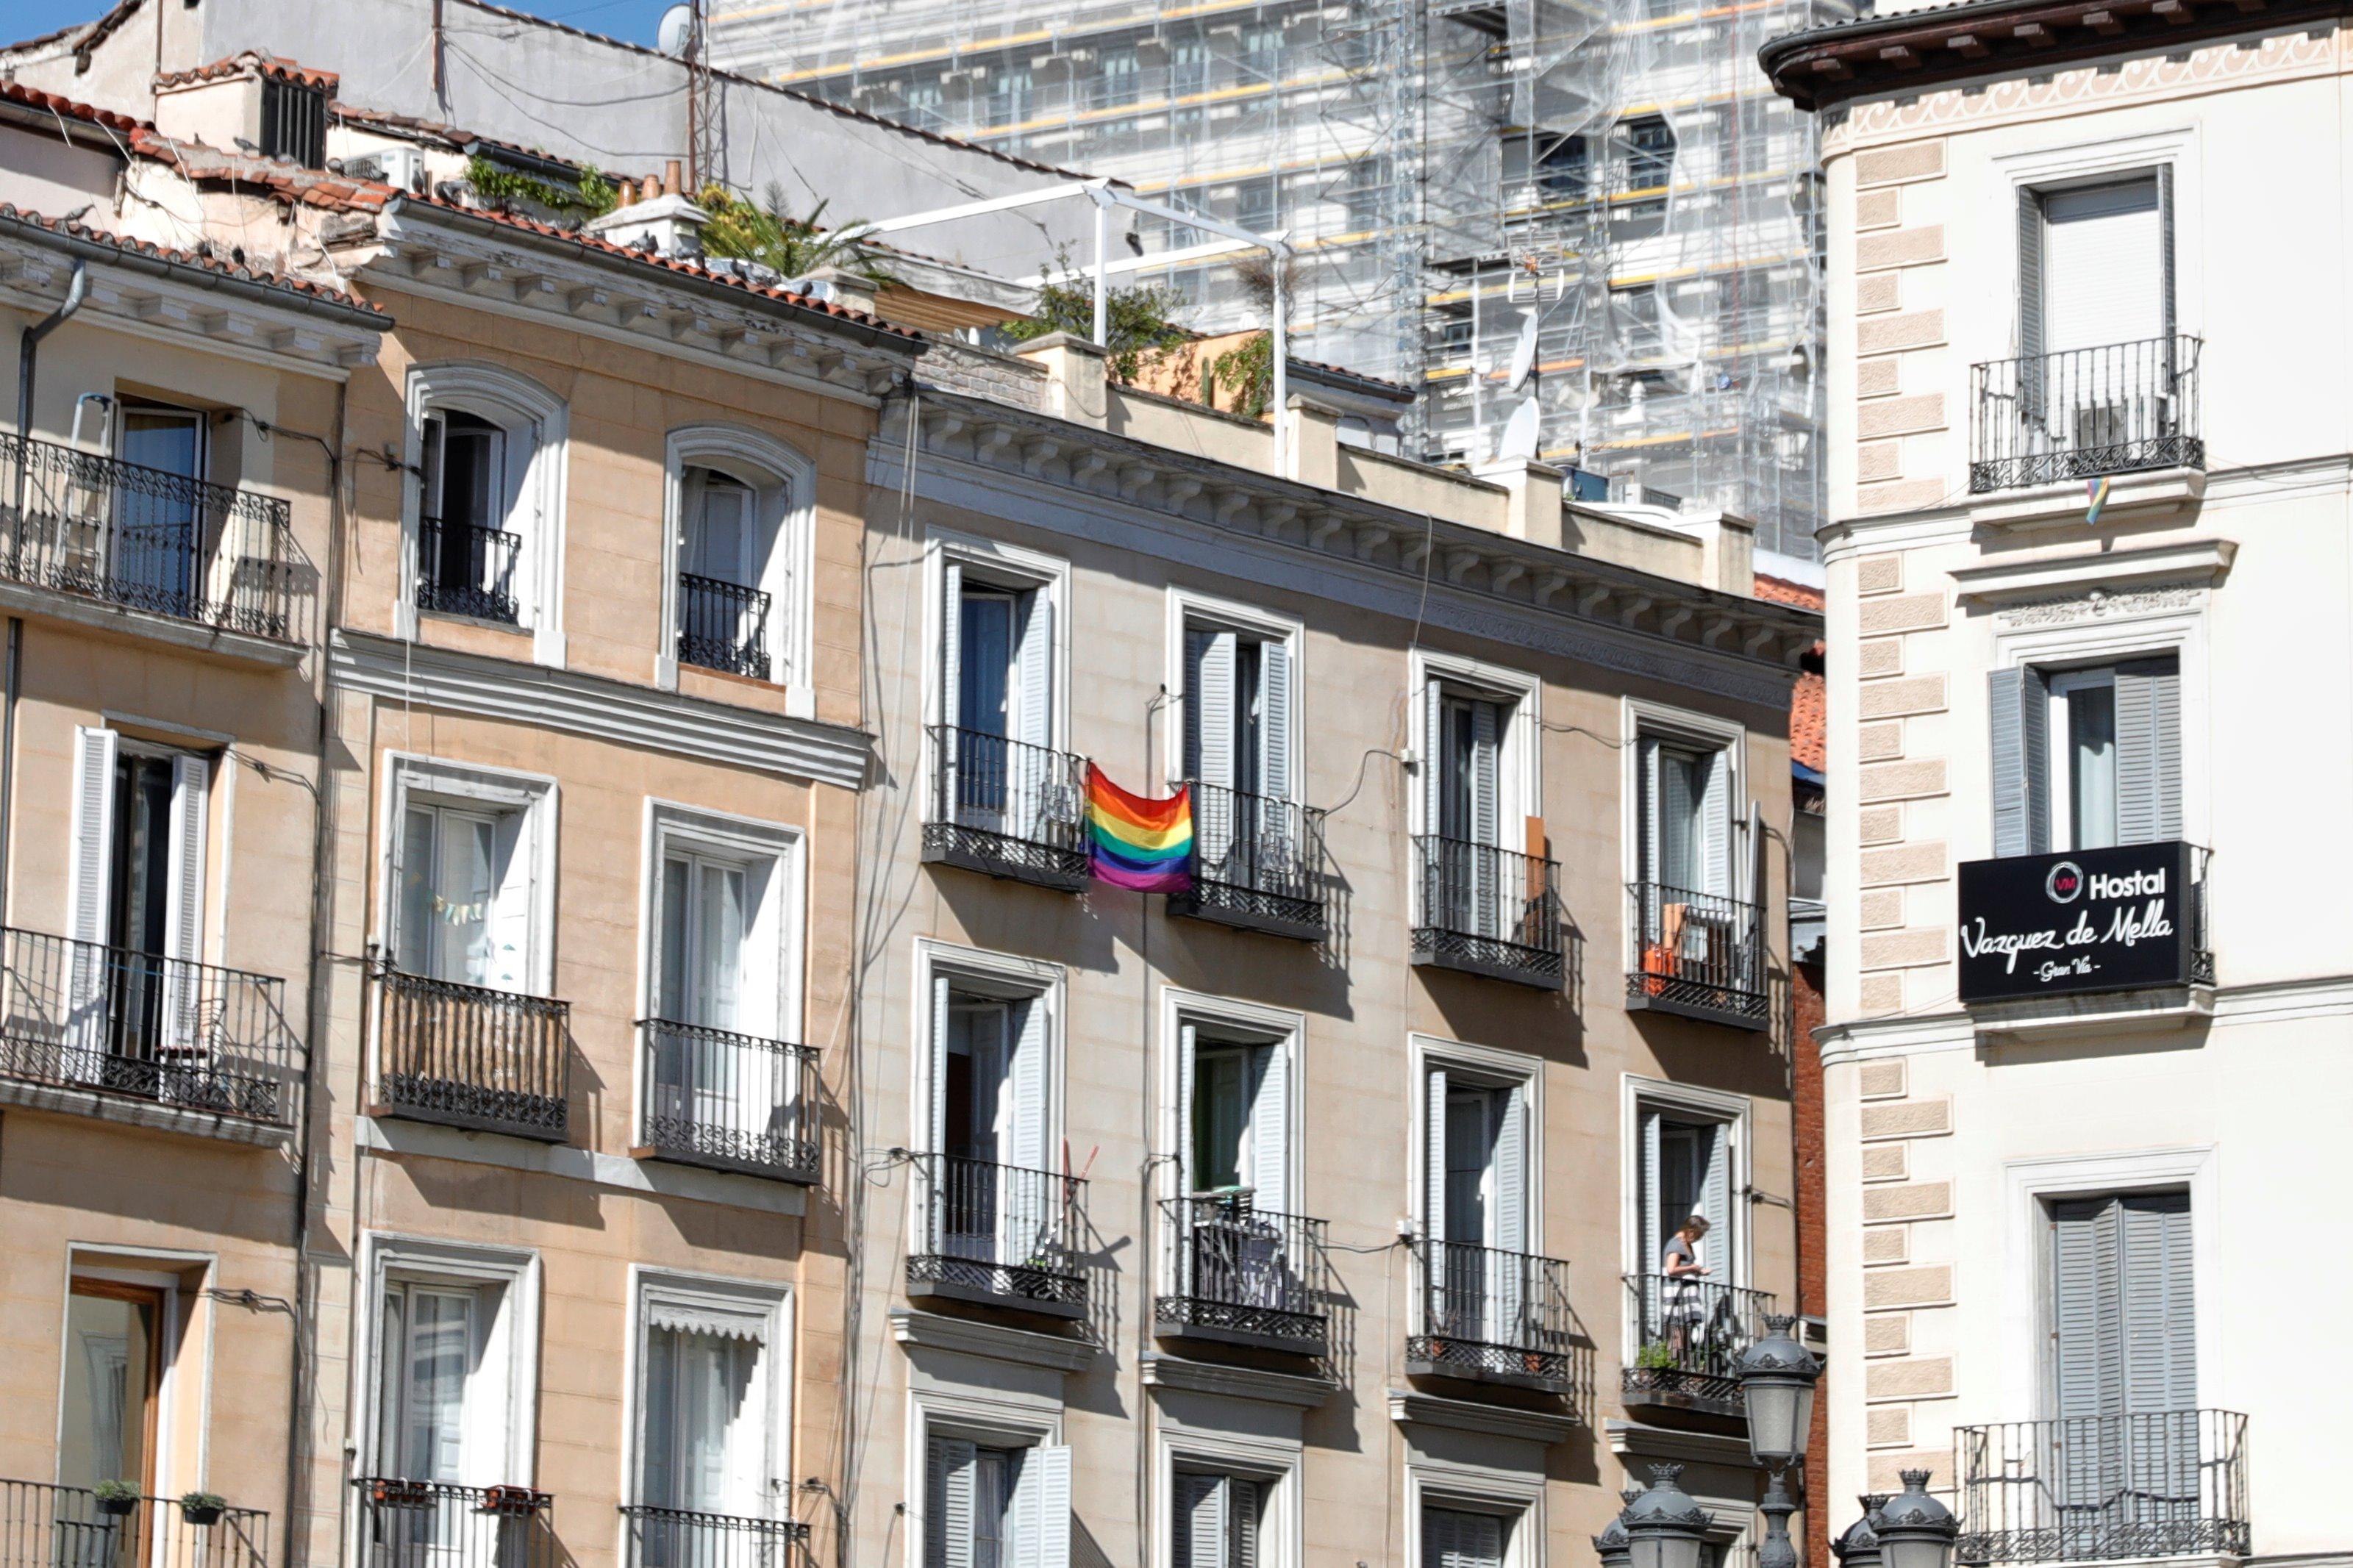 Imagen de un balcón con la bandera del Orgullo